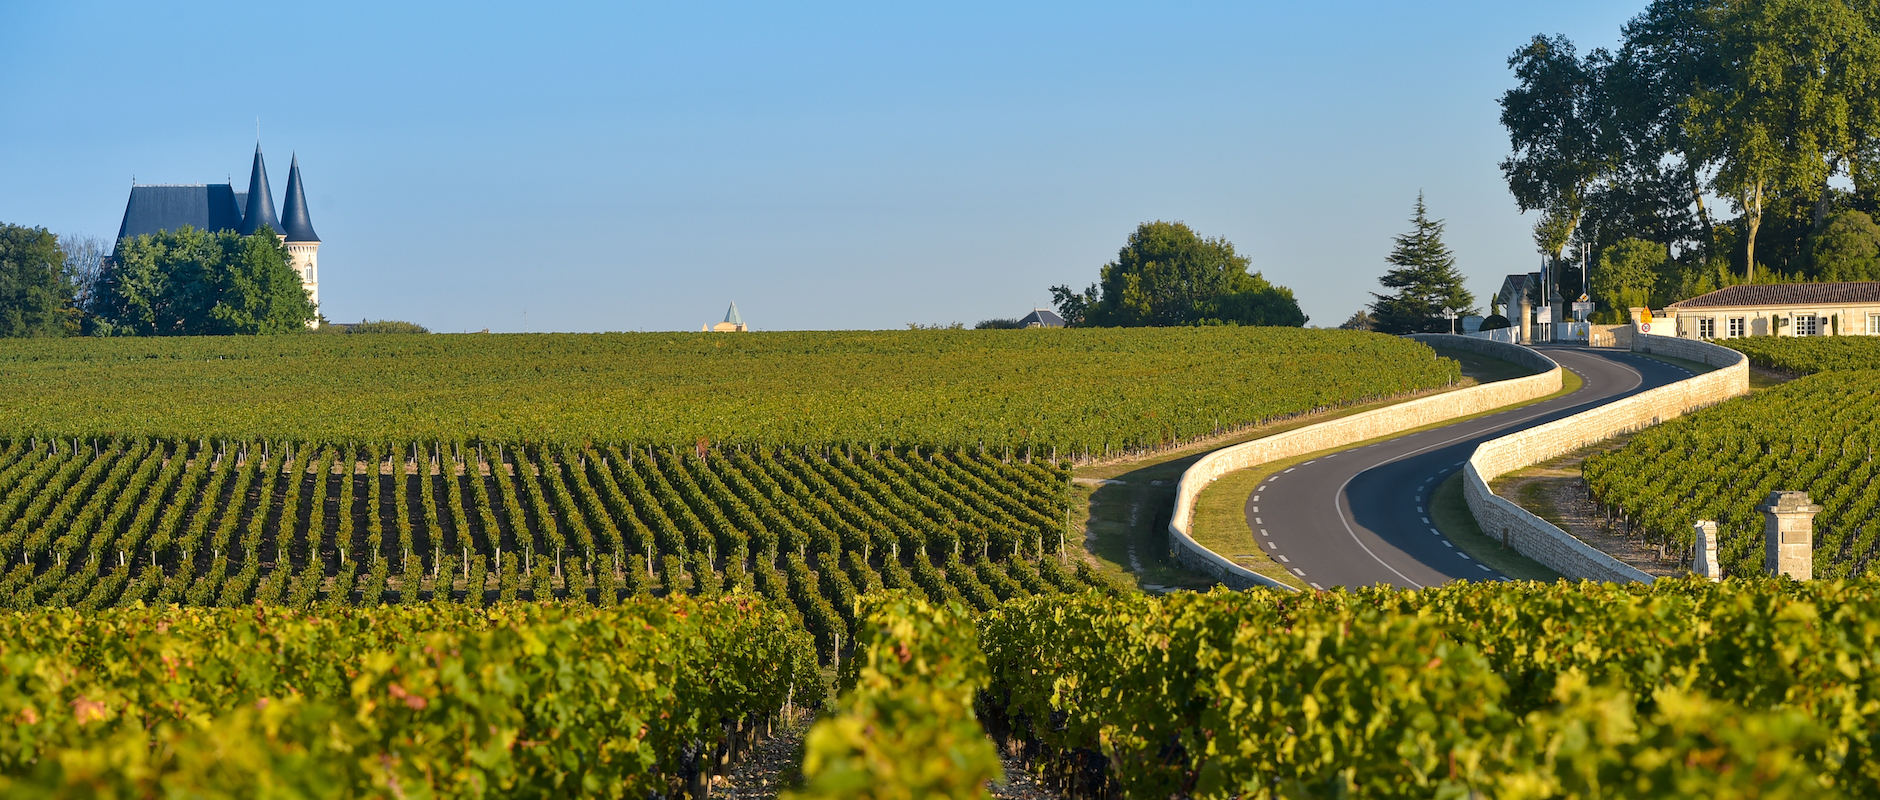 Vignoble Médoc Bordeaux ©FreeProd33 shutterstock